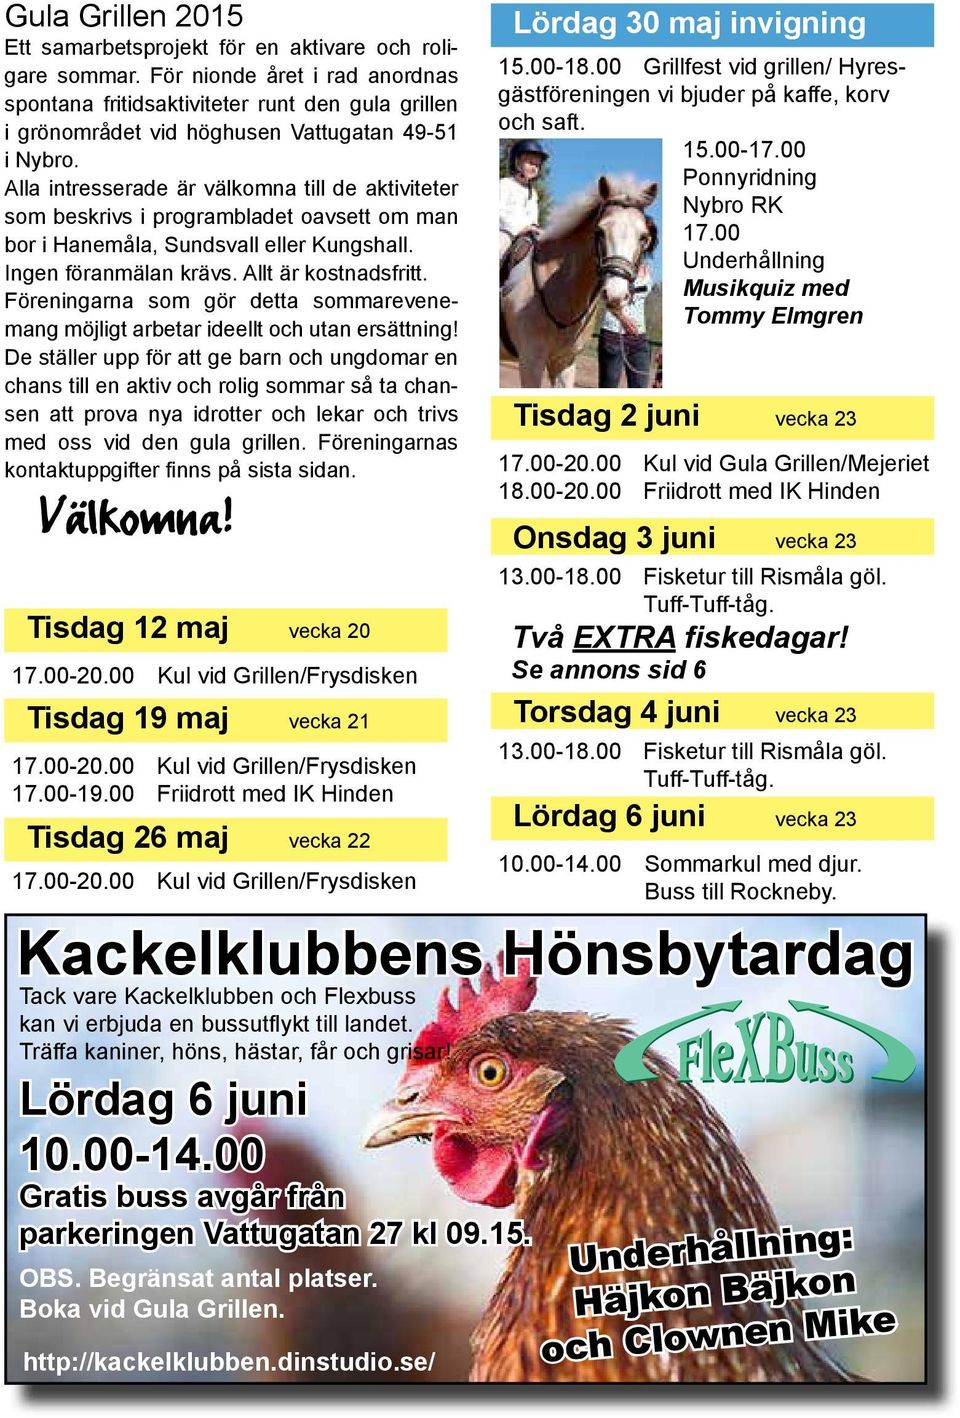 Alla intresserade är välkomna till de aktiviteter som beskrivs i programbladet oavsett om man bor i Hanemåla, Sundsvall eller Kungshall. Ingen föranmälan krävs. Allt är kostnadsfritt.